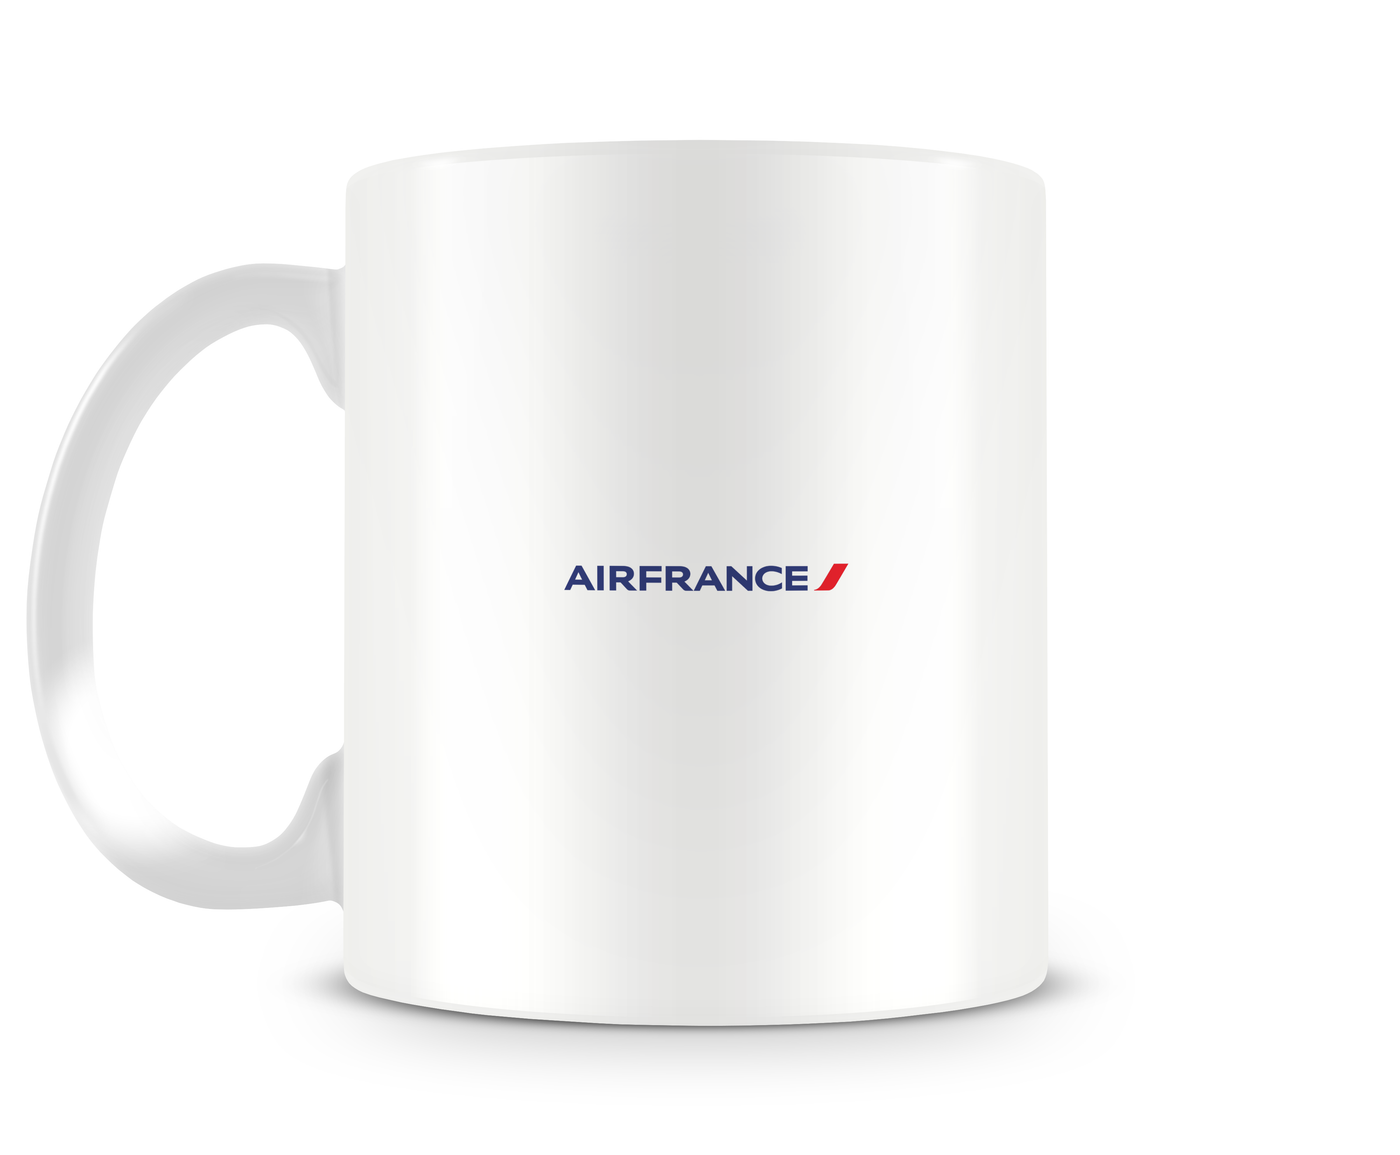 Air France Airbus A380 Mug - Aircraft Mugs